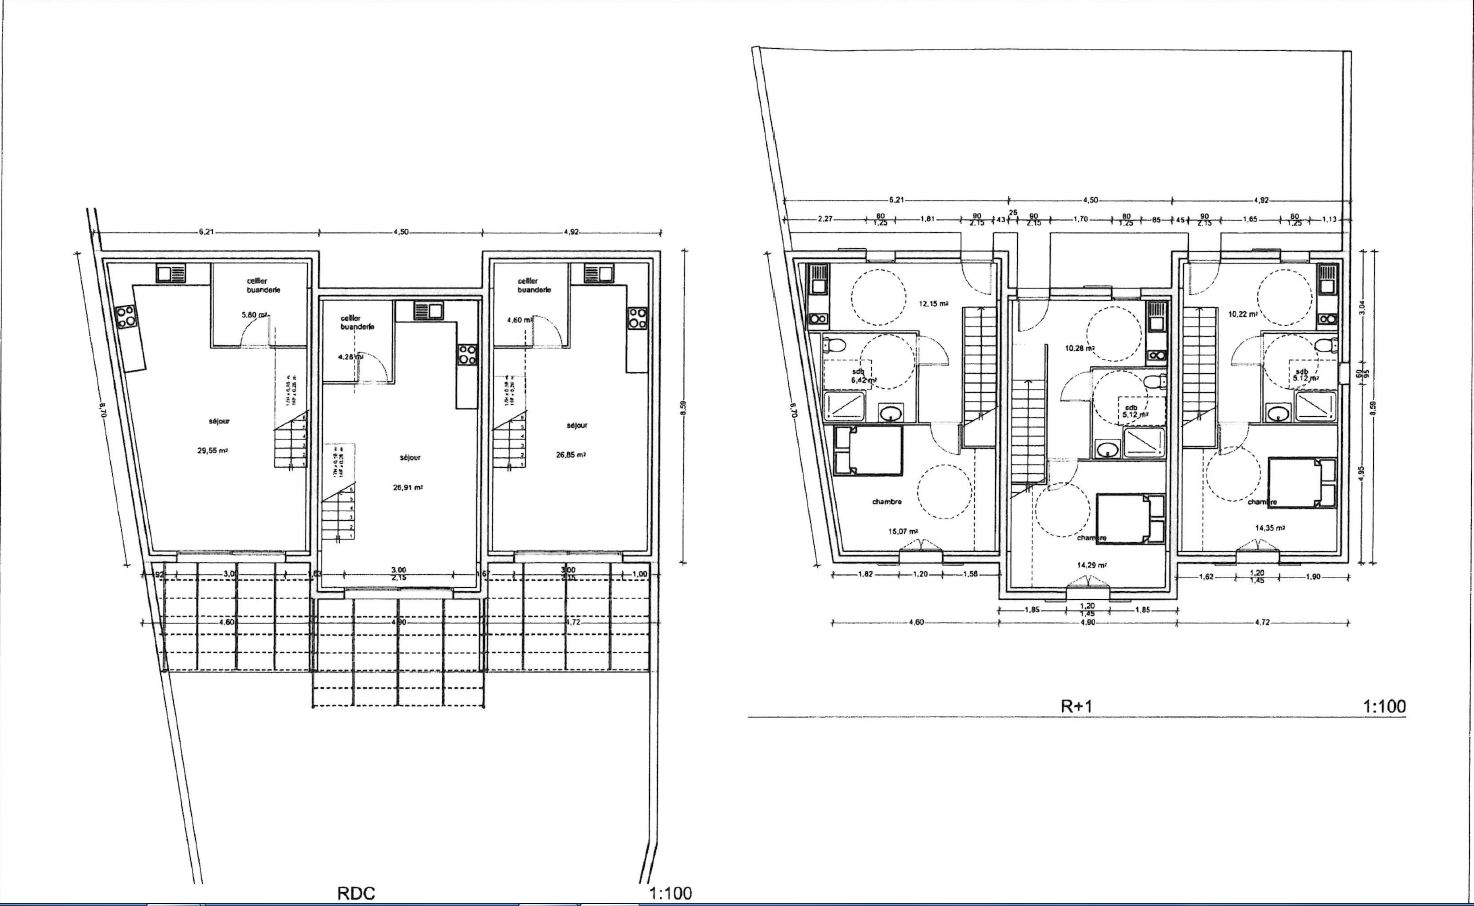 EN EXCLUSIVITE ! A CADENET  Maison T2 EN VEFA 69 m² sur 124 m² de terrain